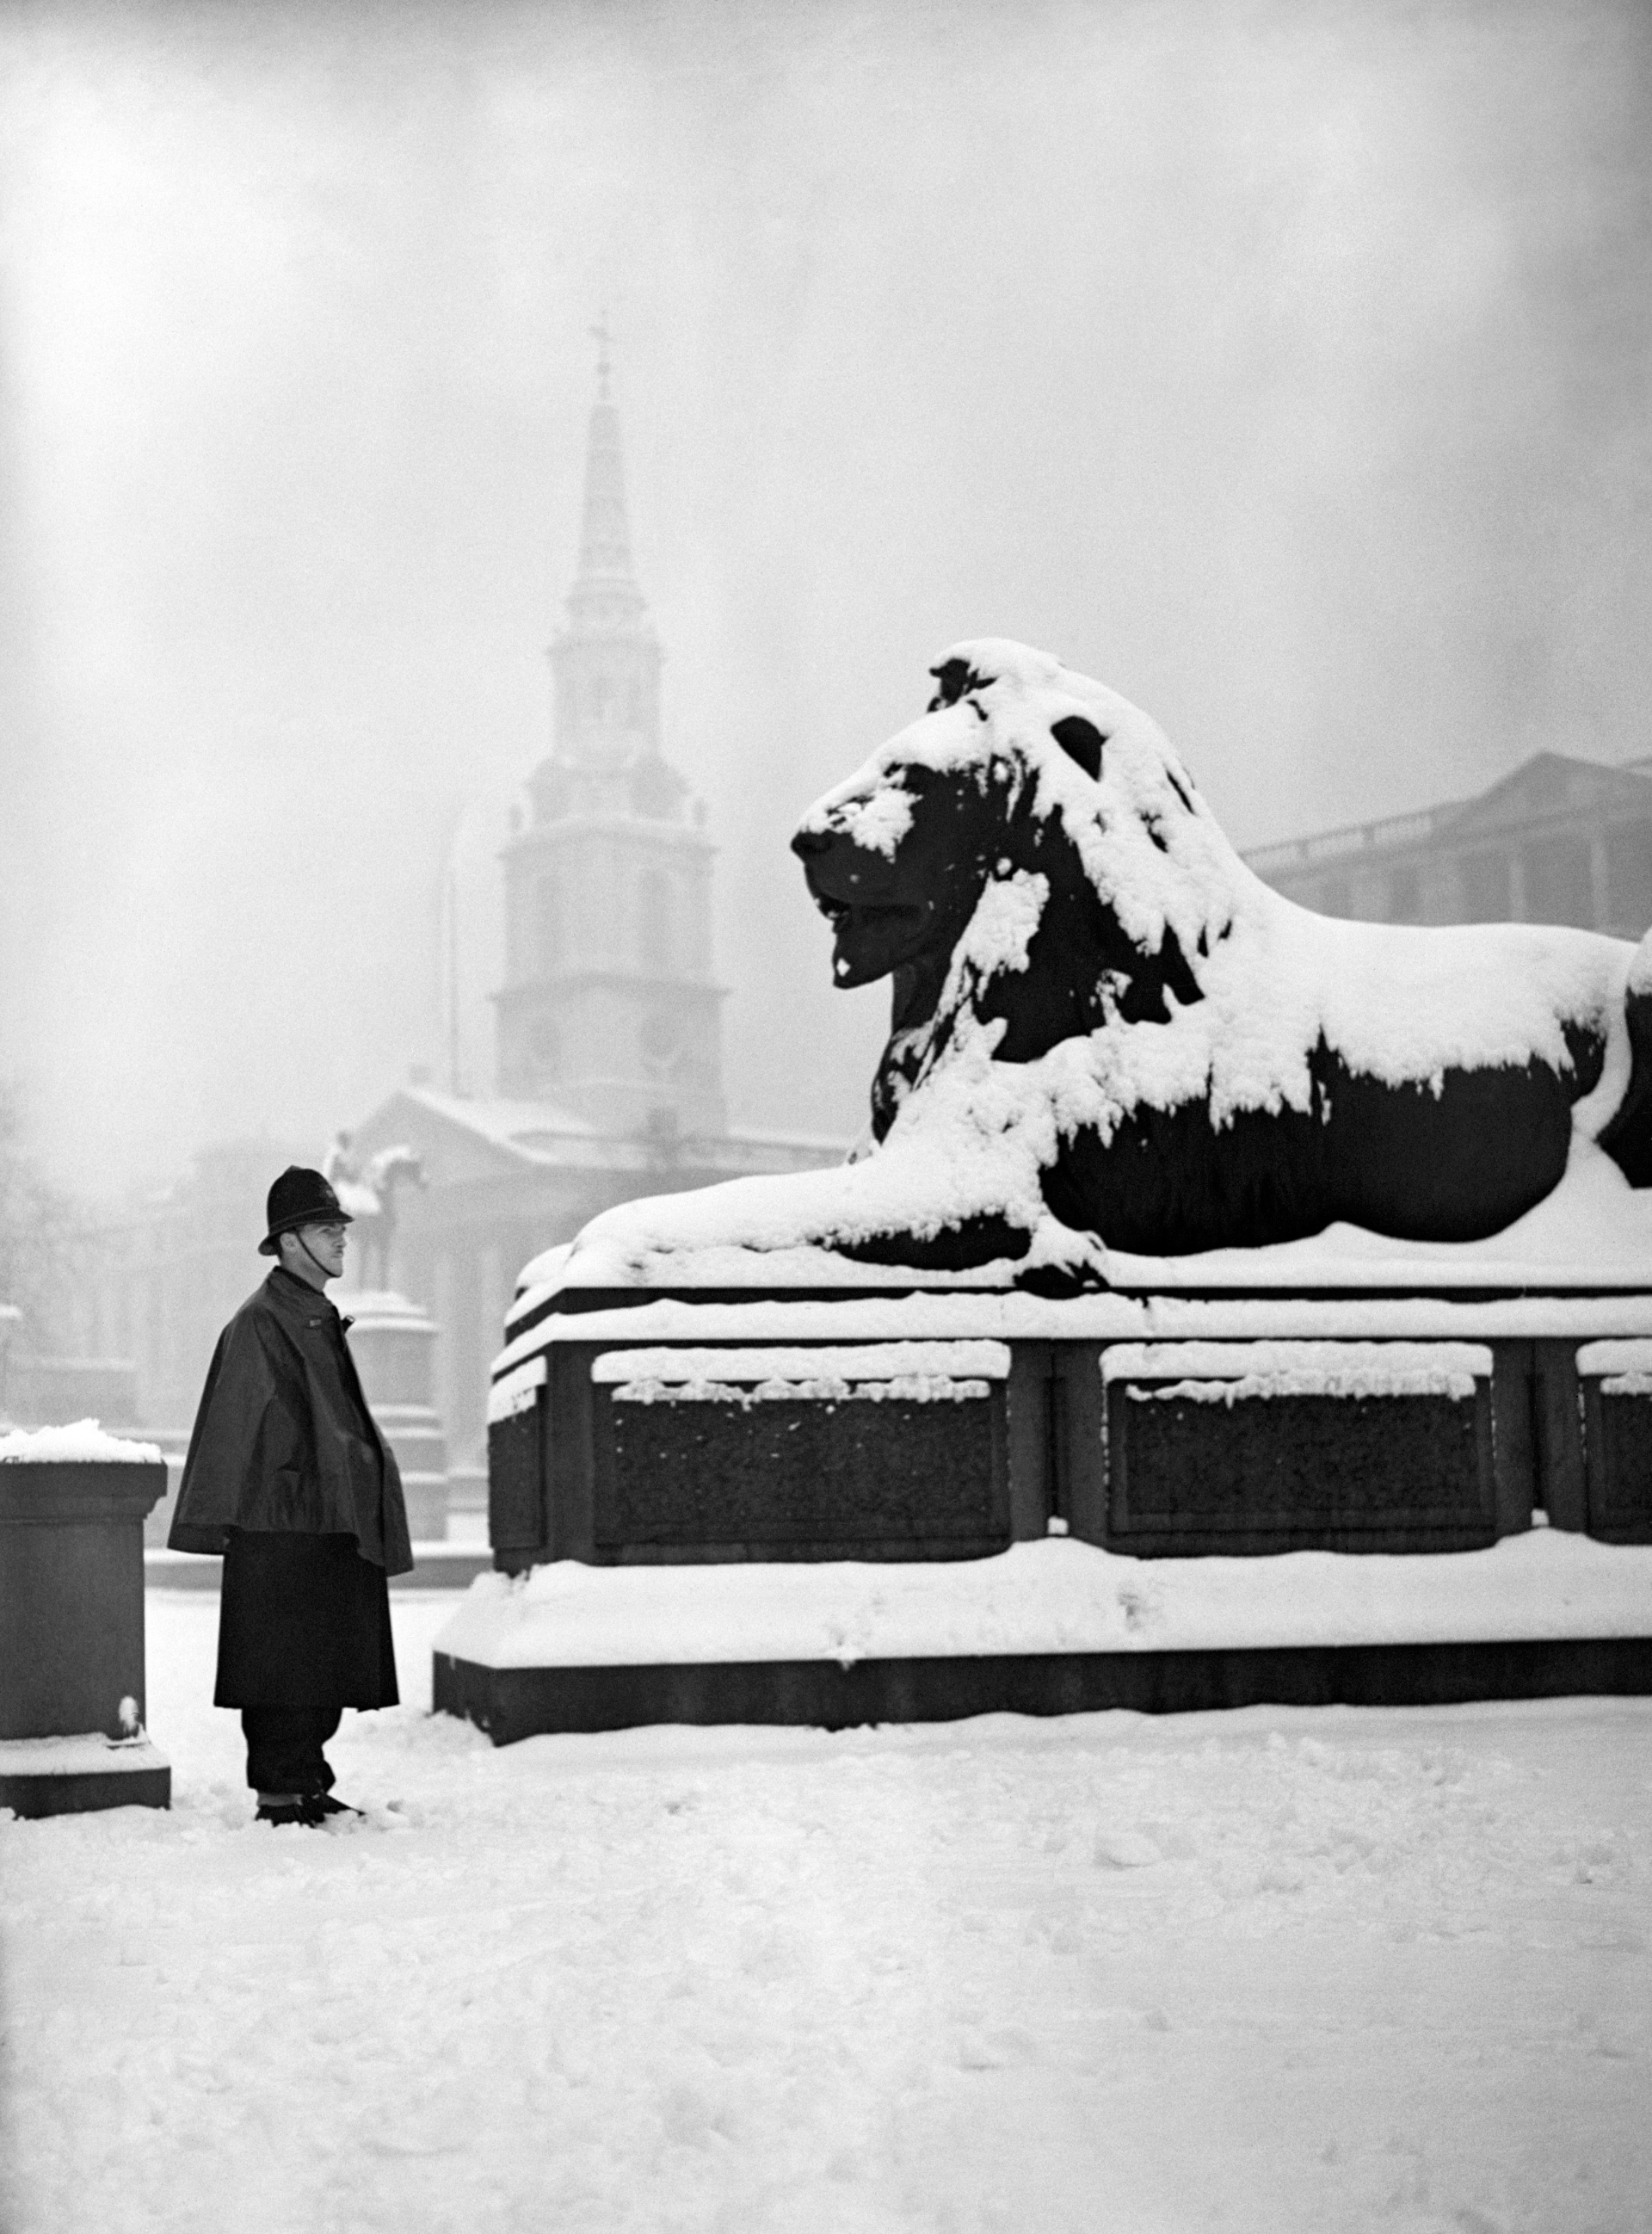 A snowy Trafalgar Square, 1947